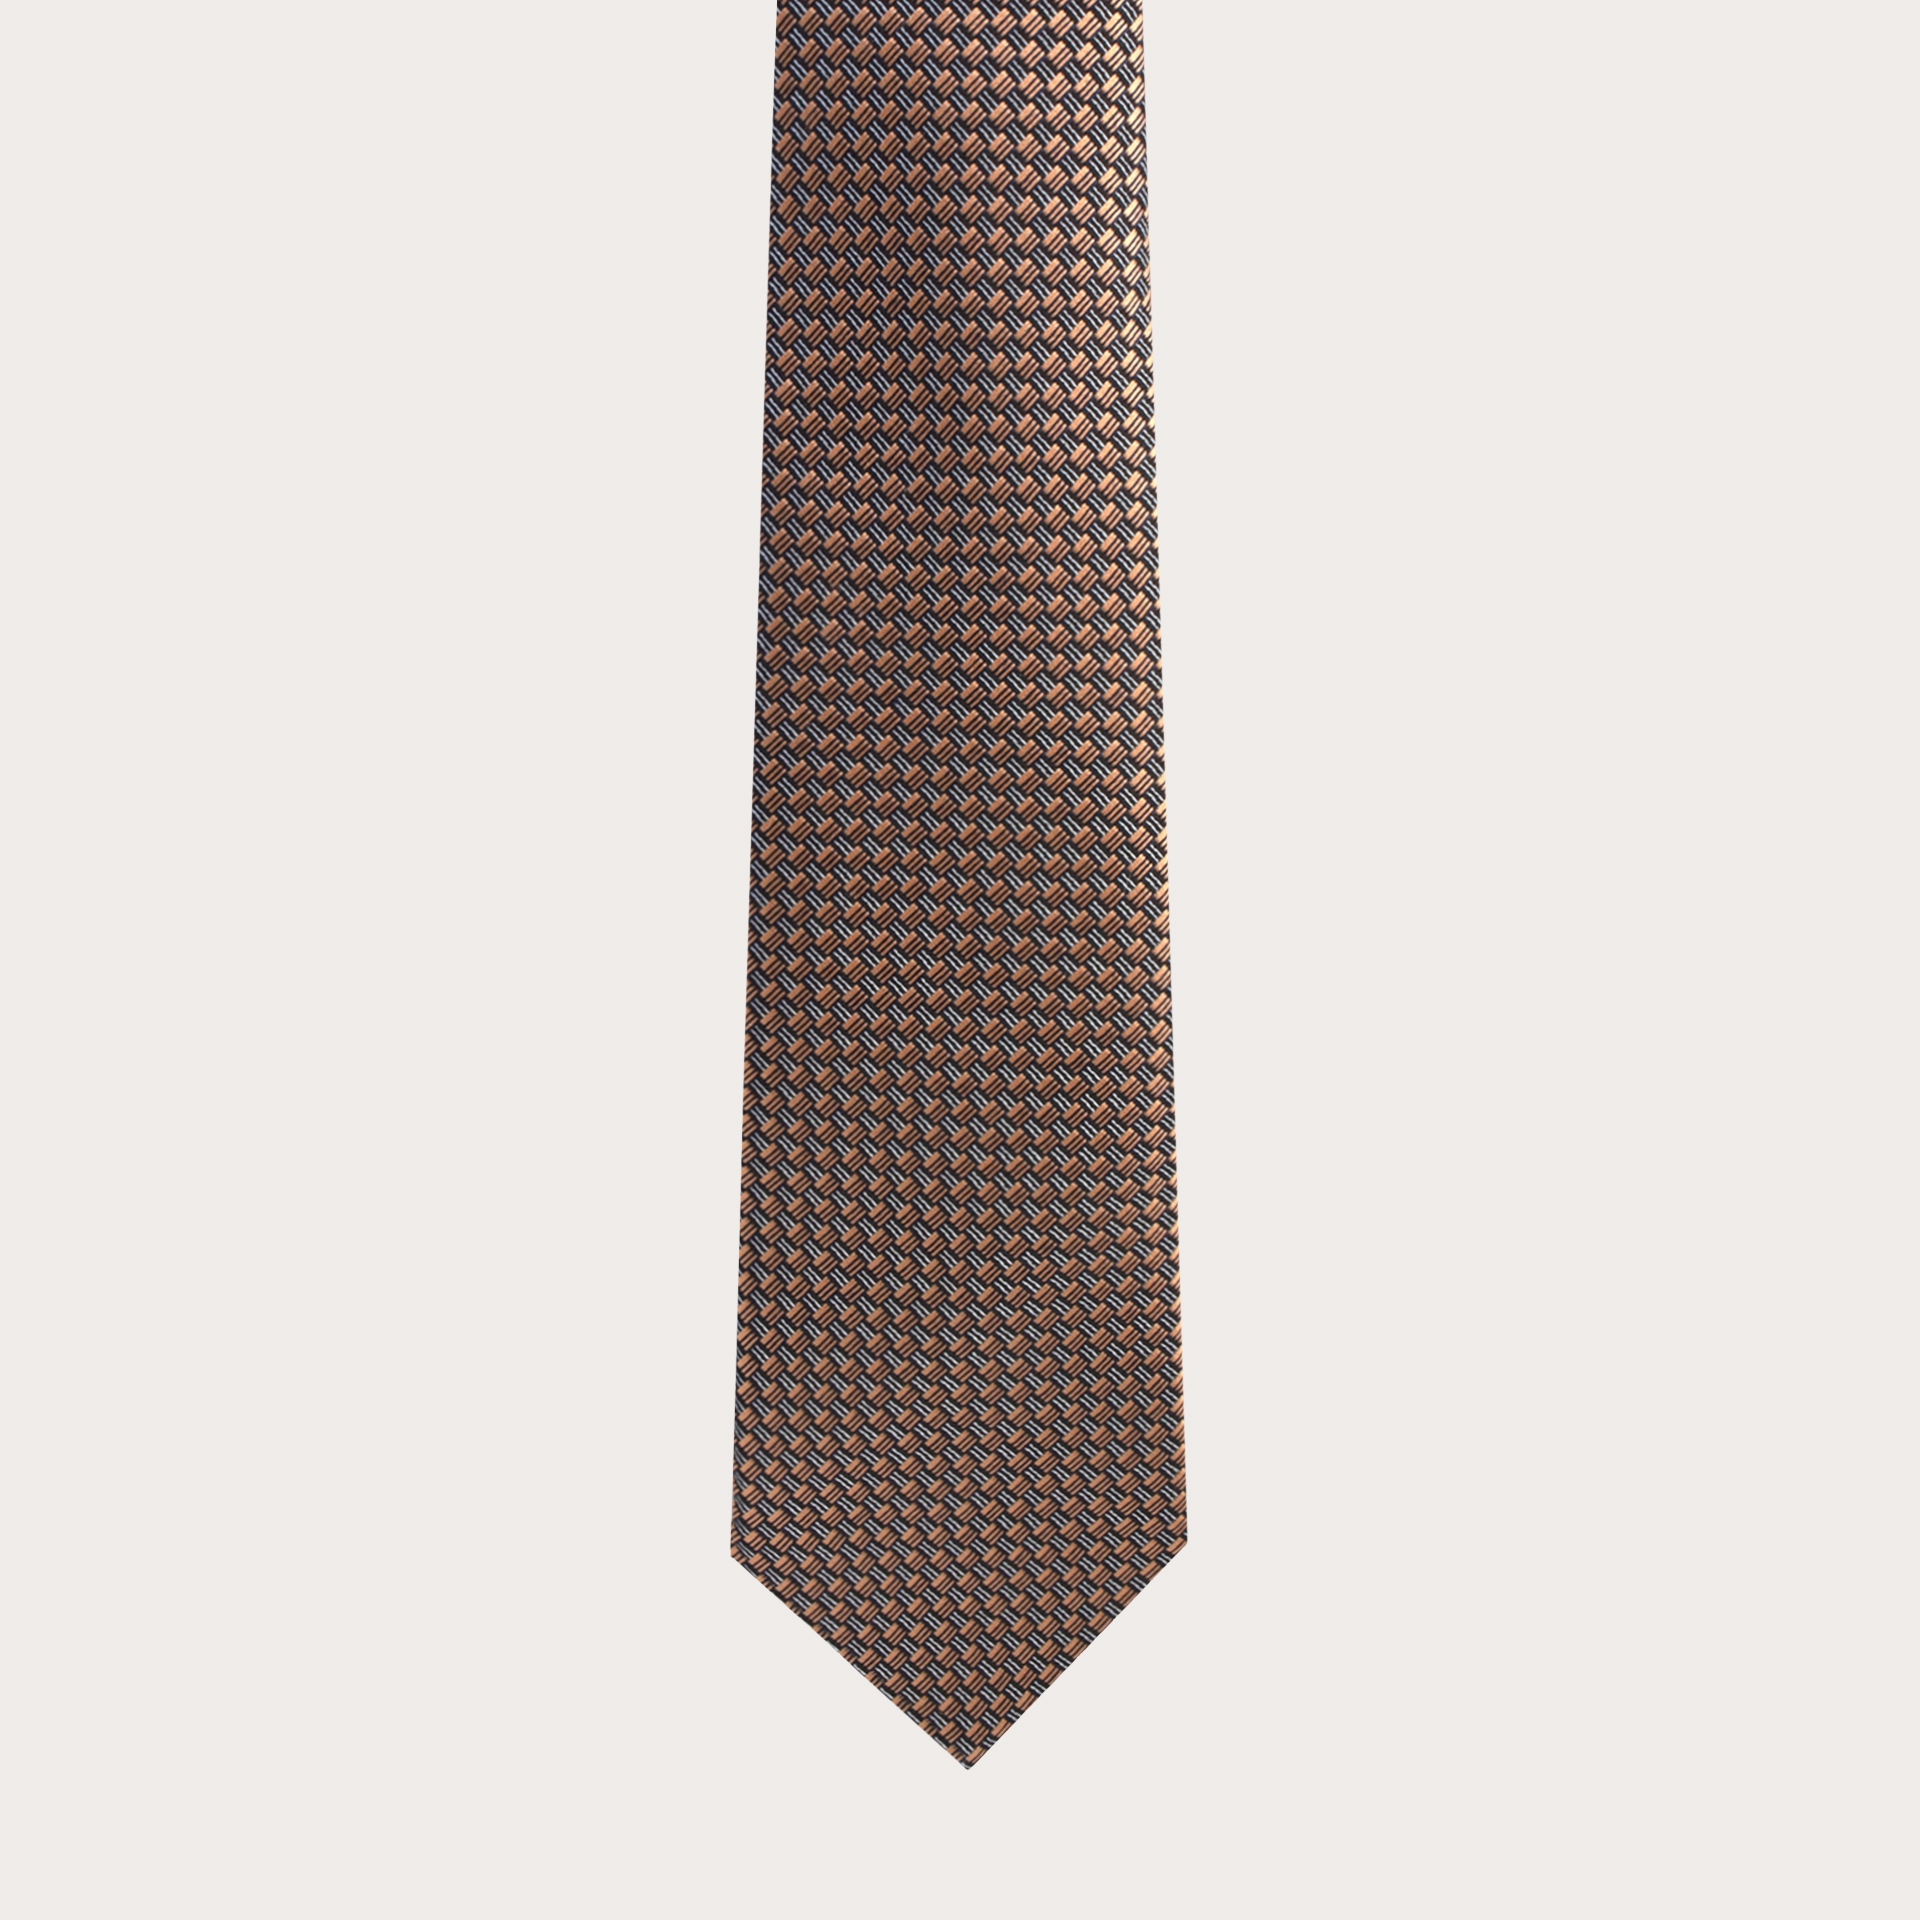 BRUCLE Cravate élégante en soie jacquard, motif bronze